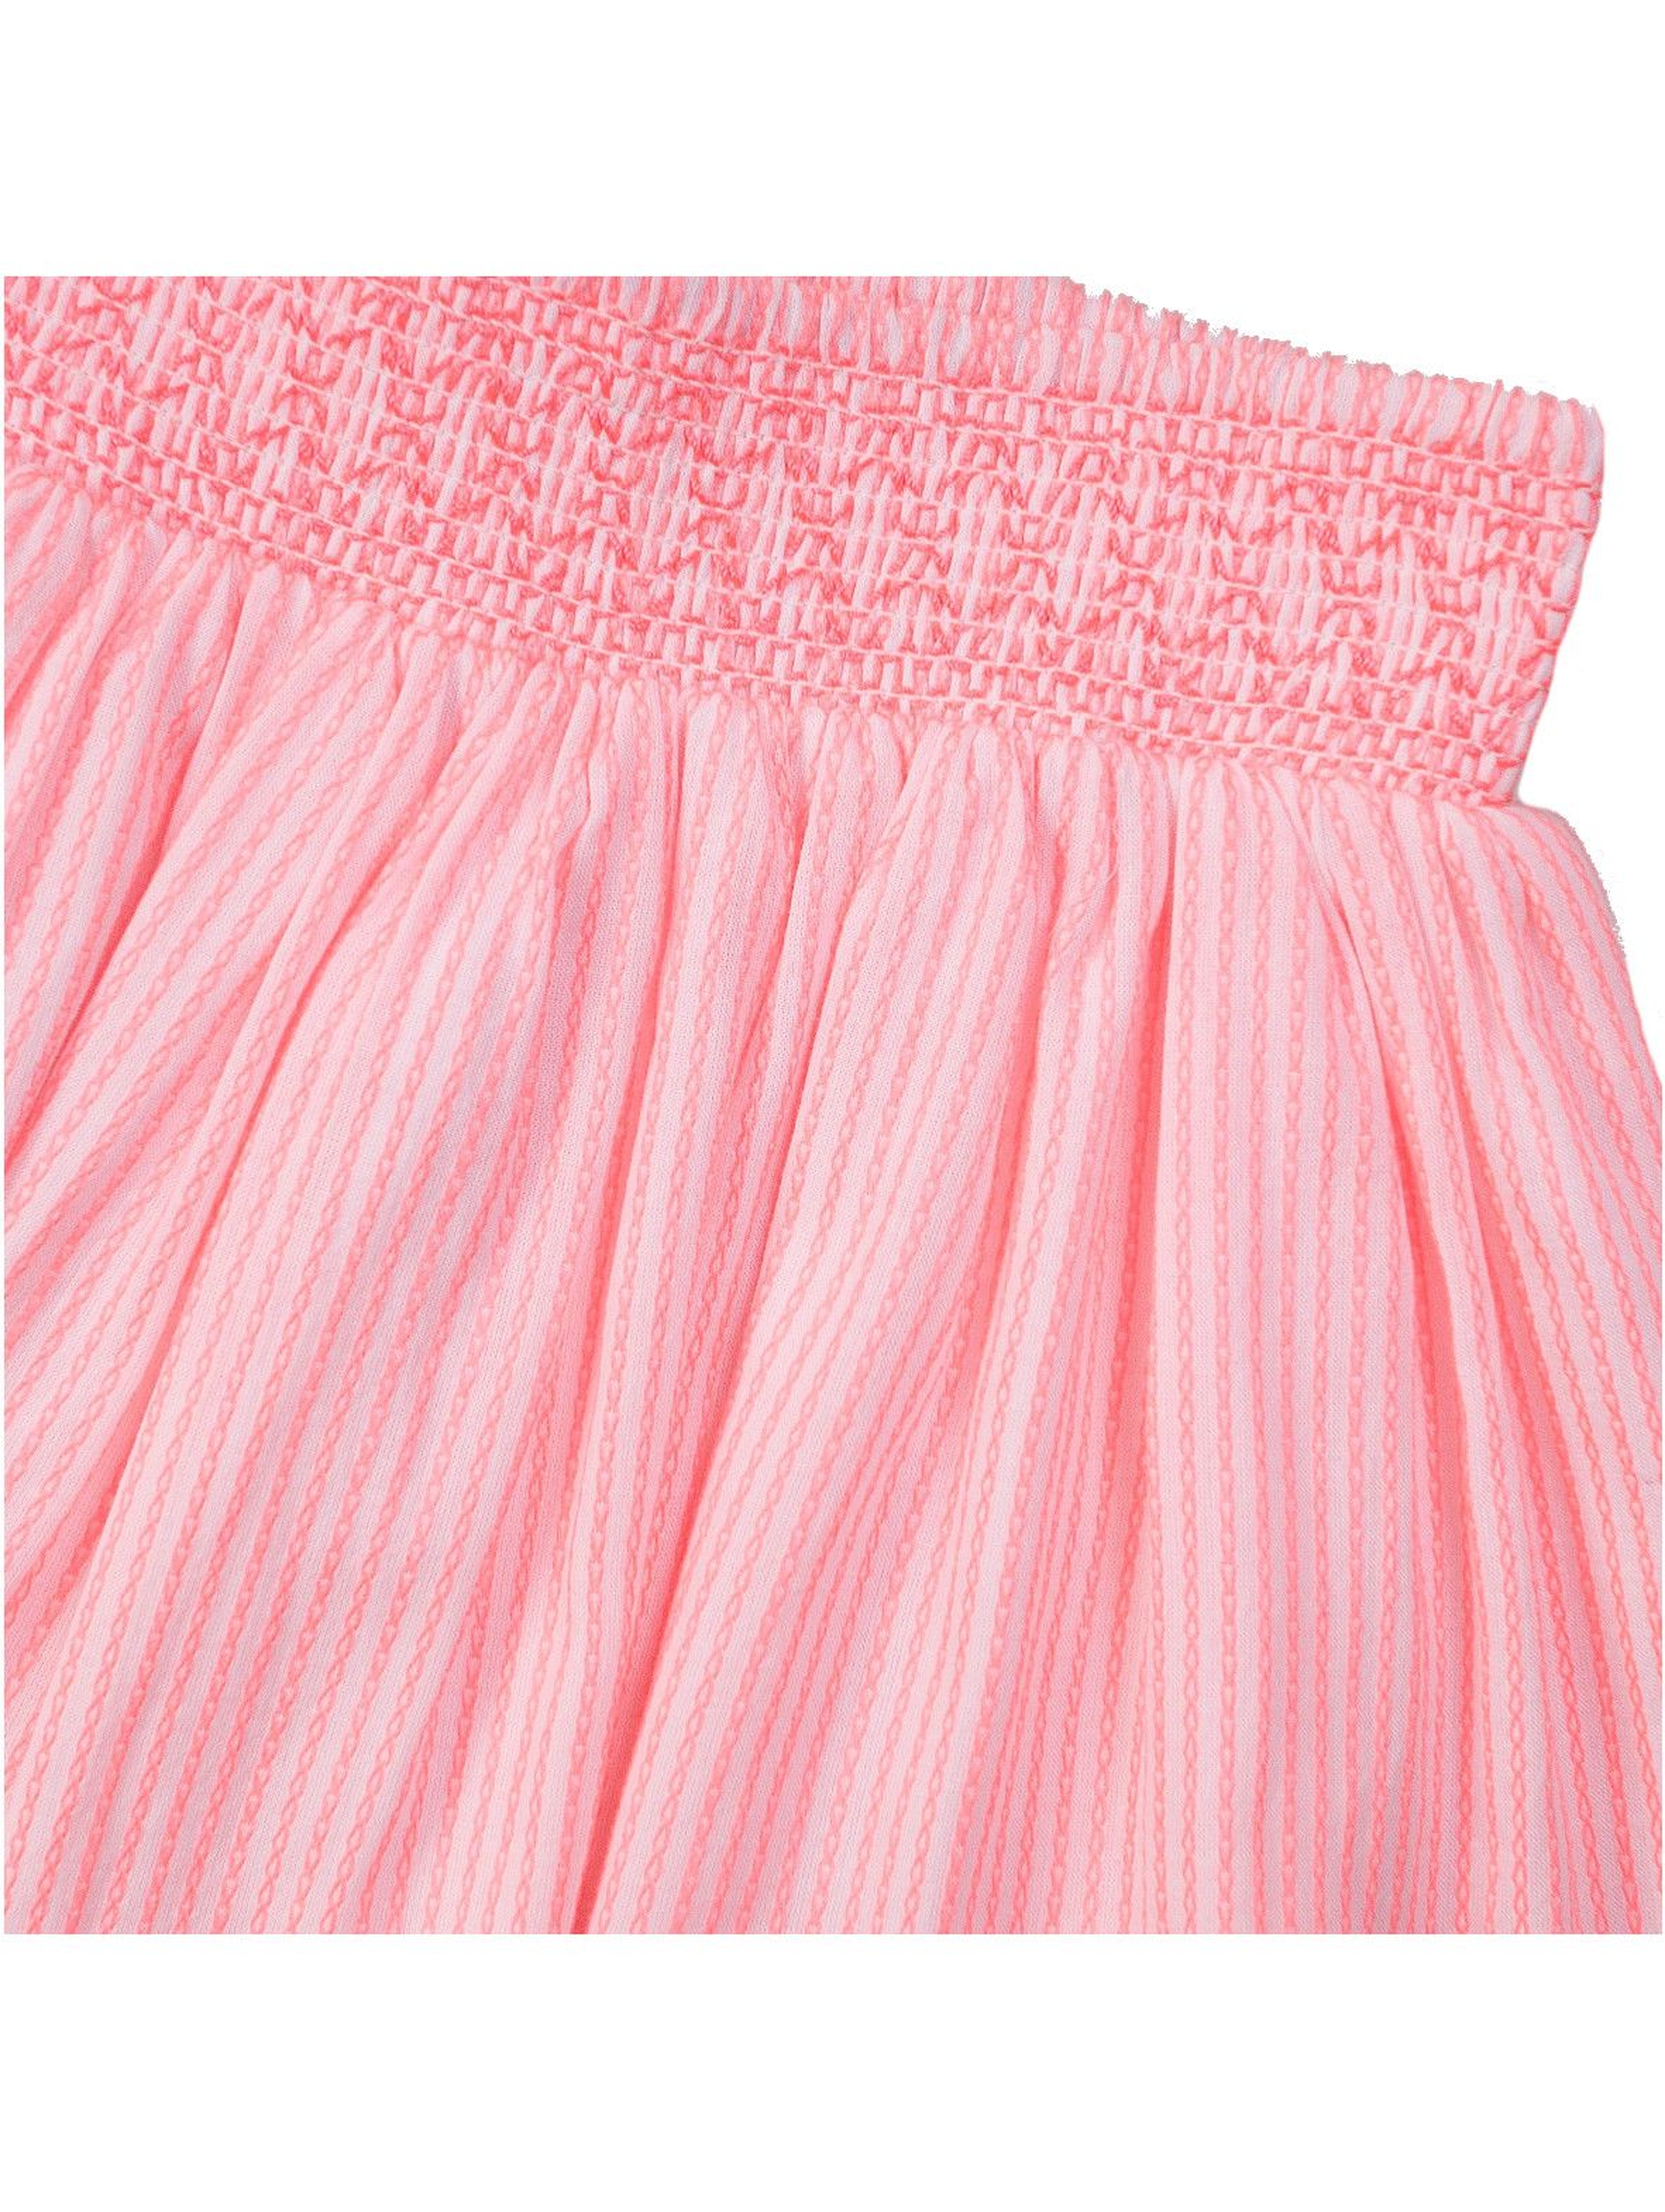 Spódniczka plisowana w z ozdobną gumką w pasie - różowa